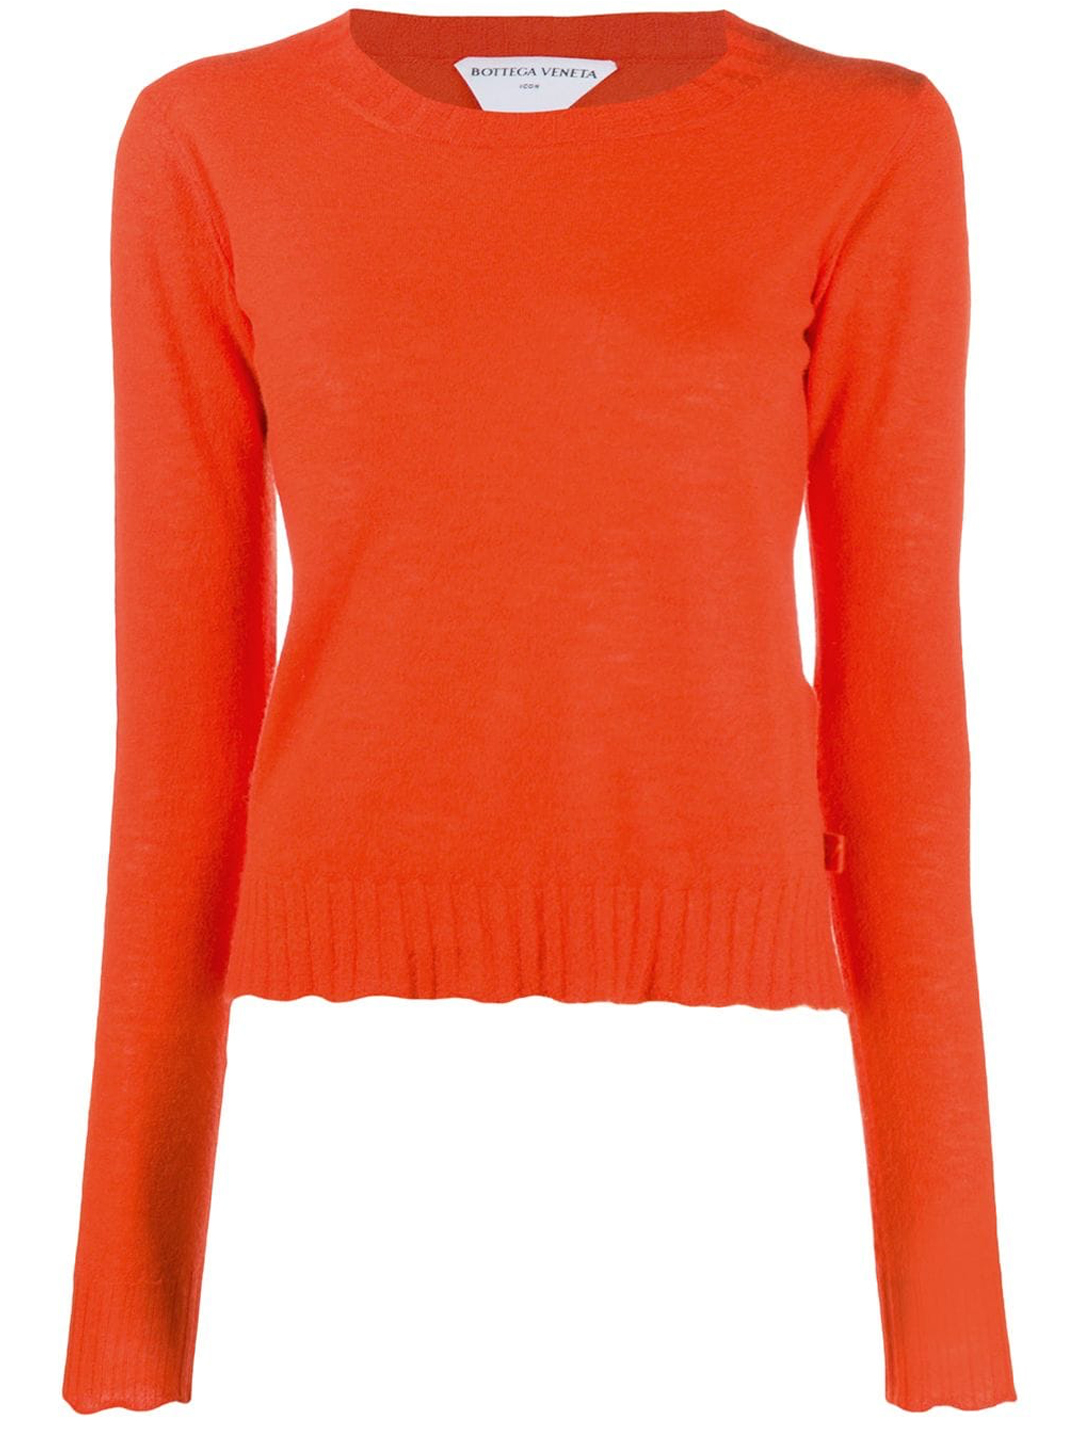 Свитер Bottega Veneta Orange Cashmere, оранжевый кашемировый свитер h